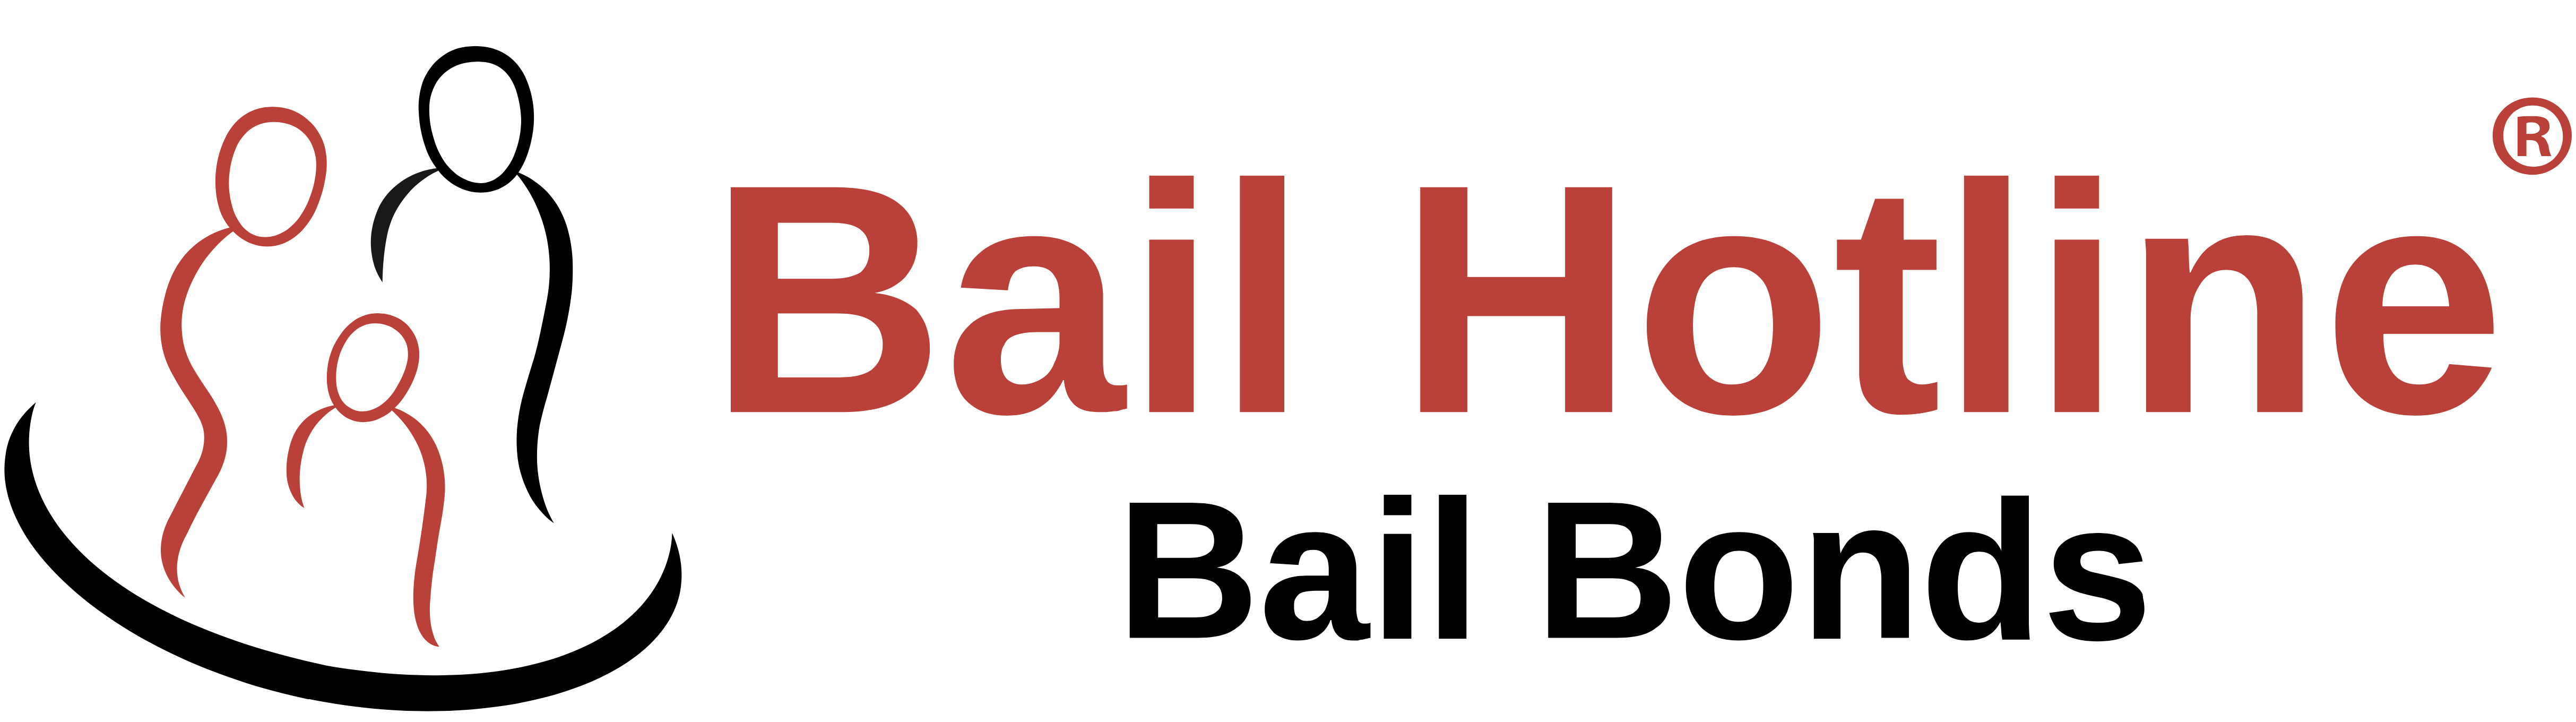 bail bonds near me cheap